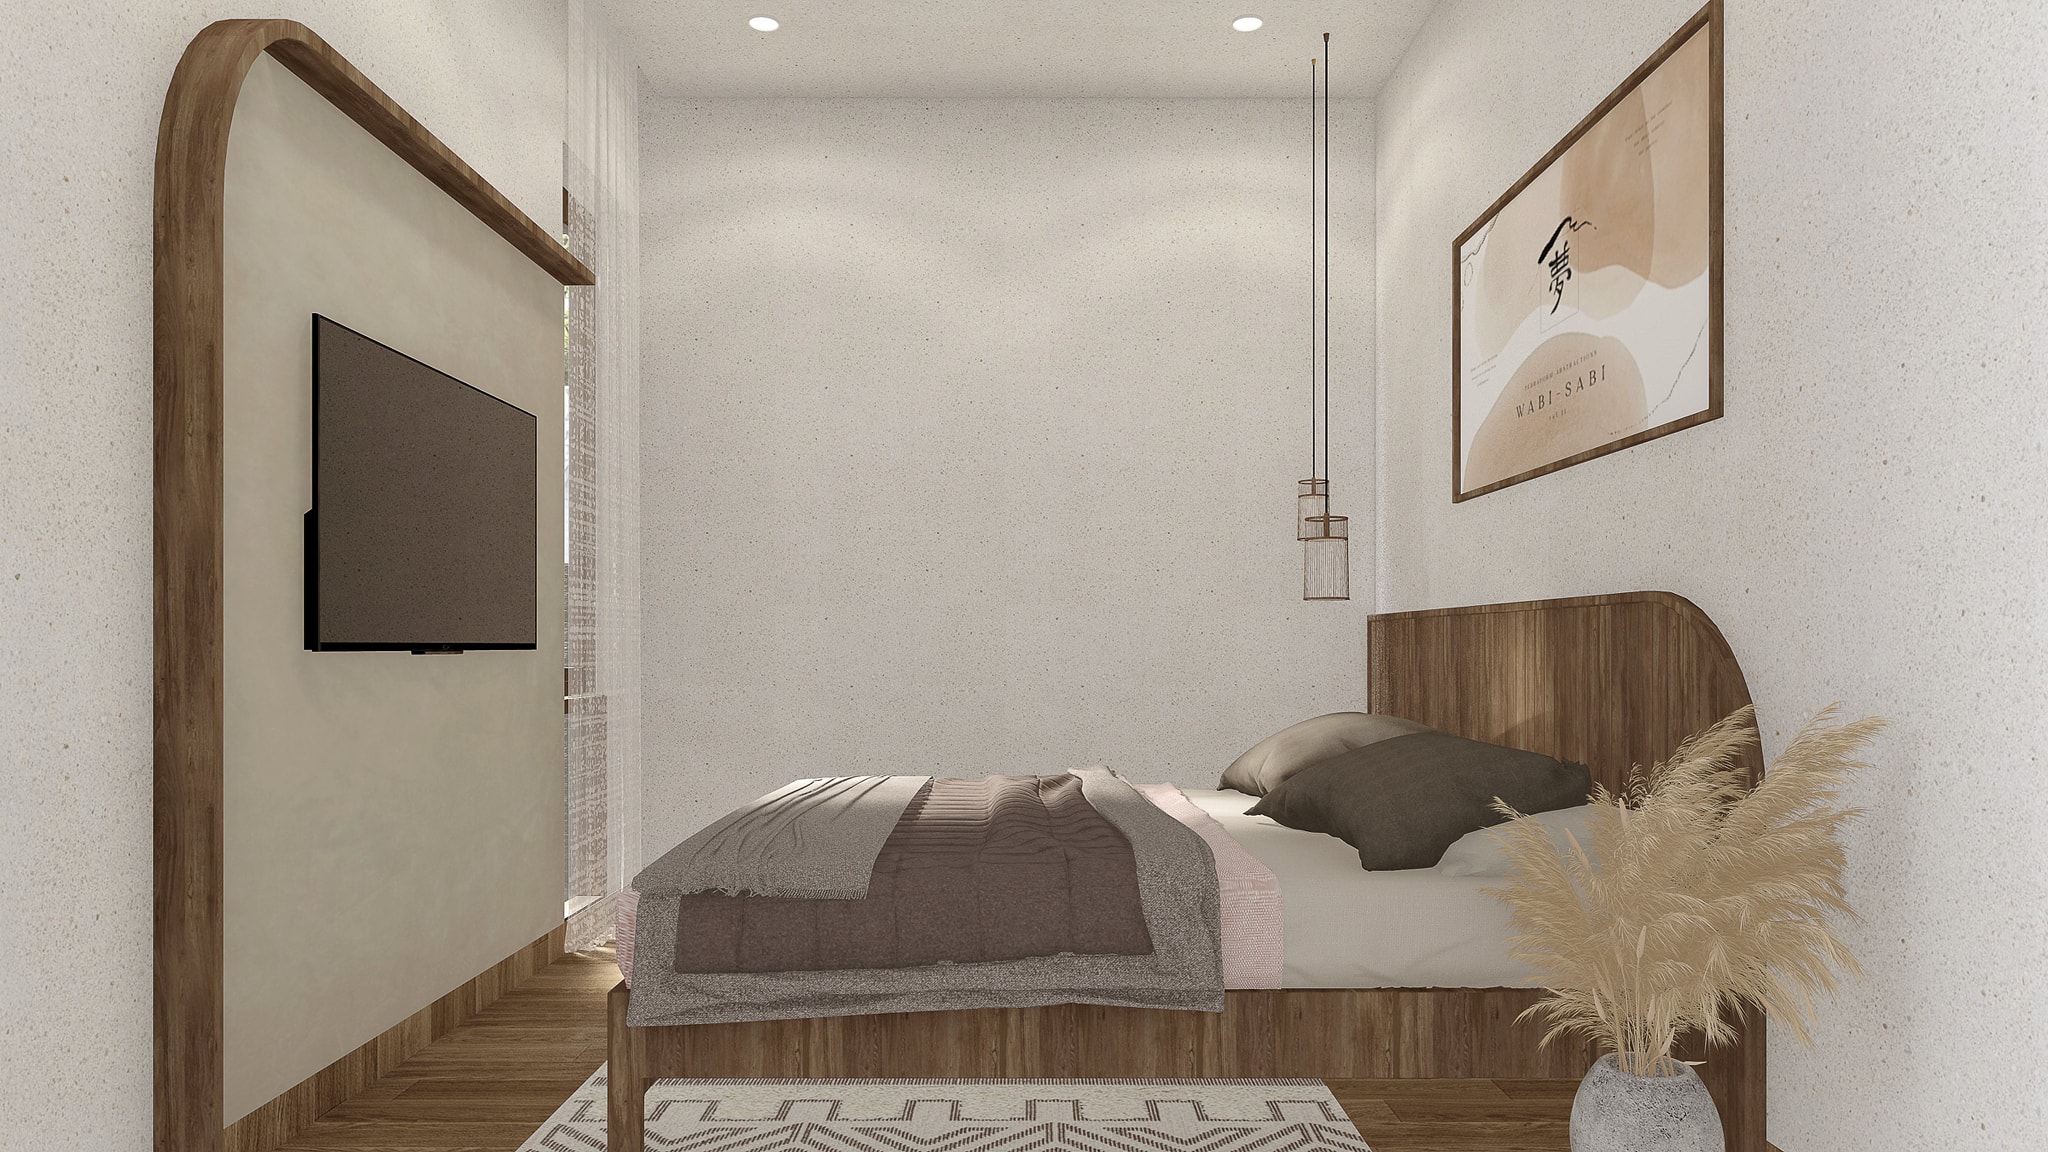 Phòng ngủ được thiết kế đơn giản với nội thất nhẹ nhàng kết hợp decor tinh tế